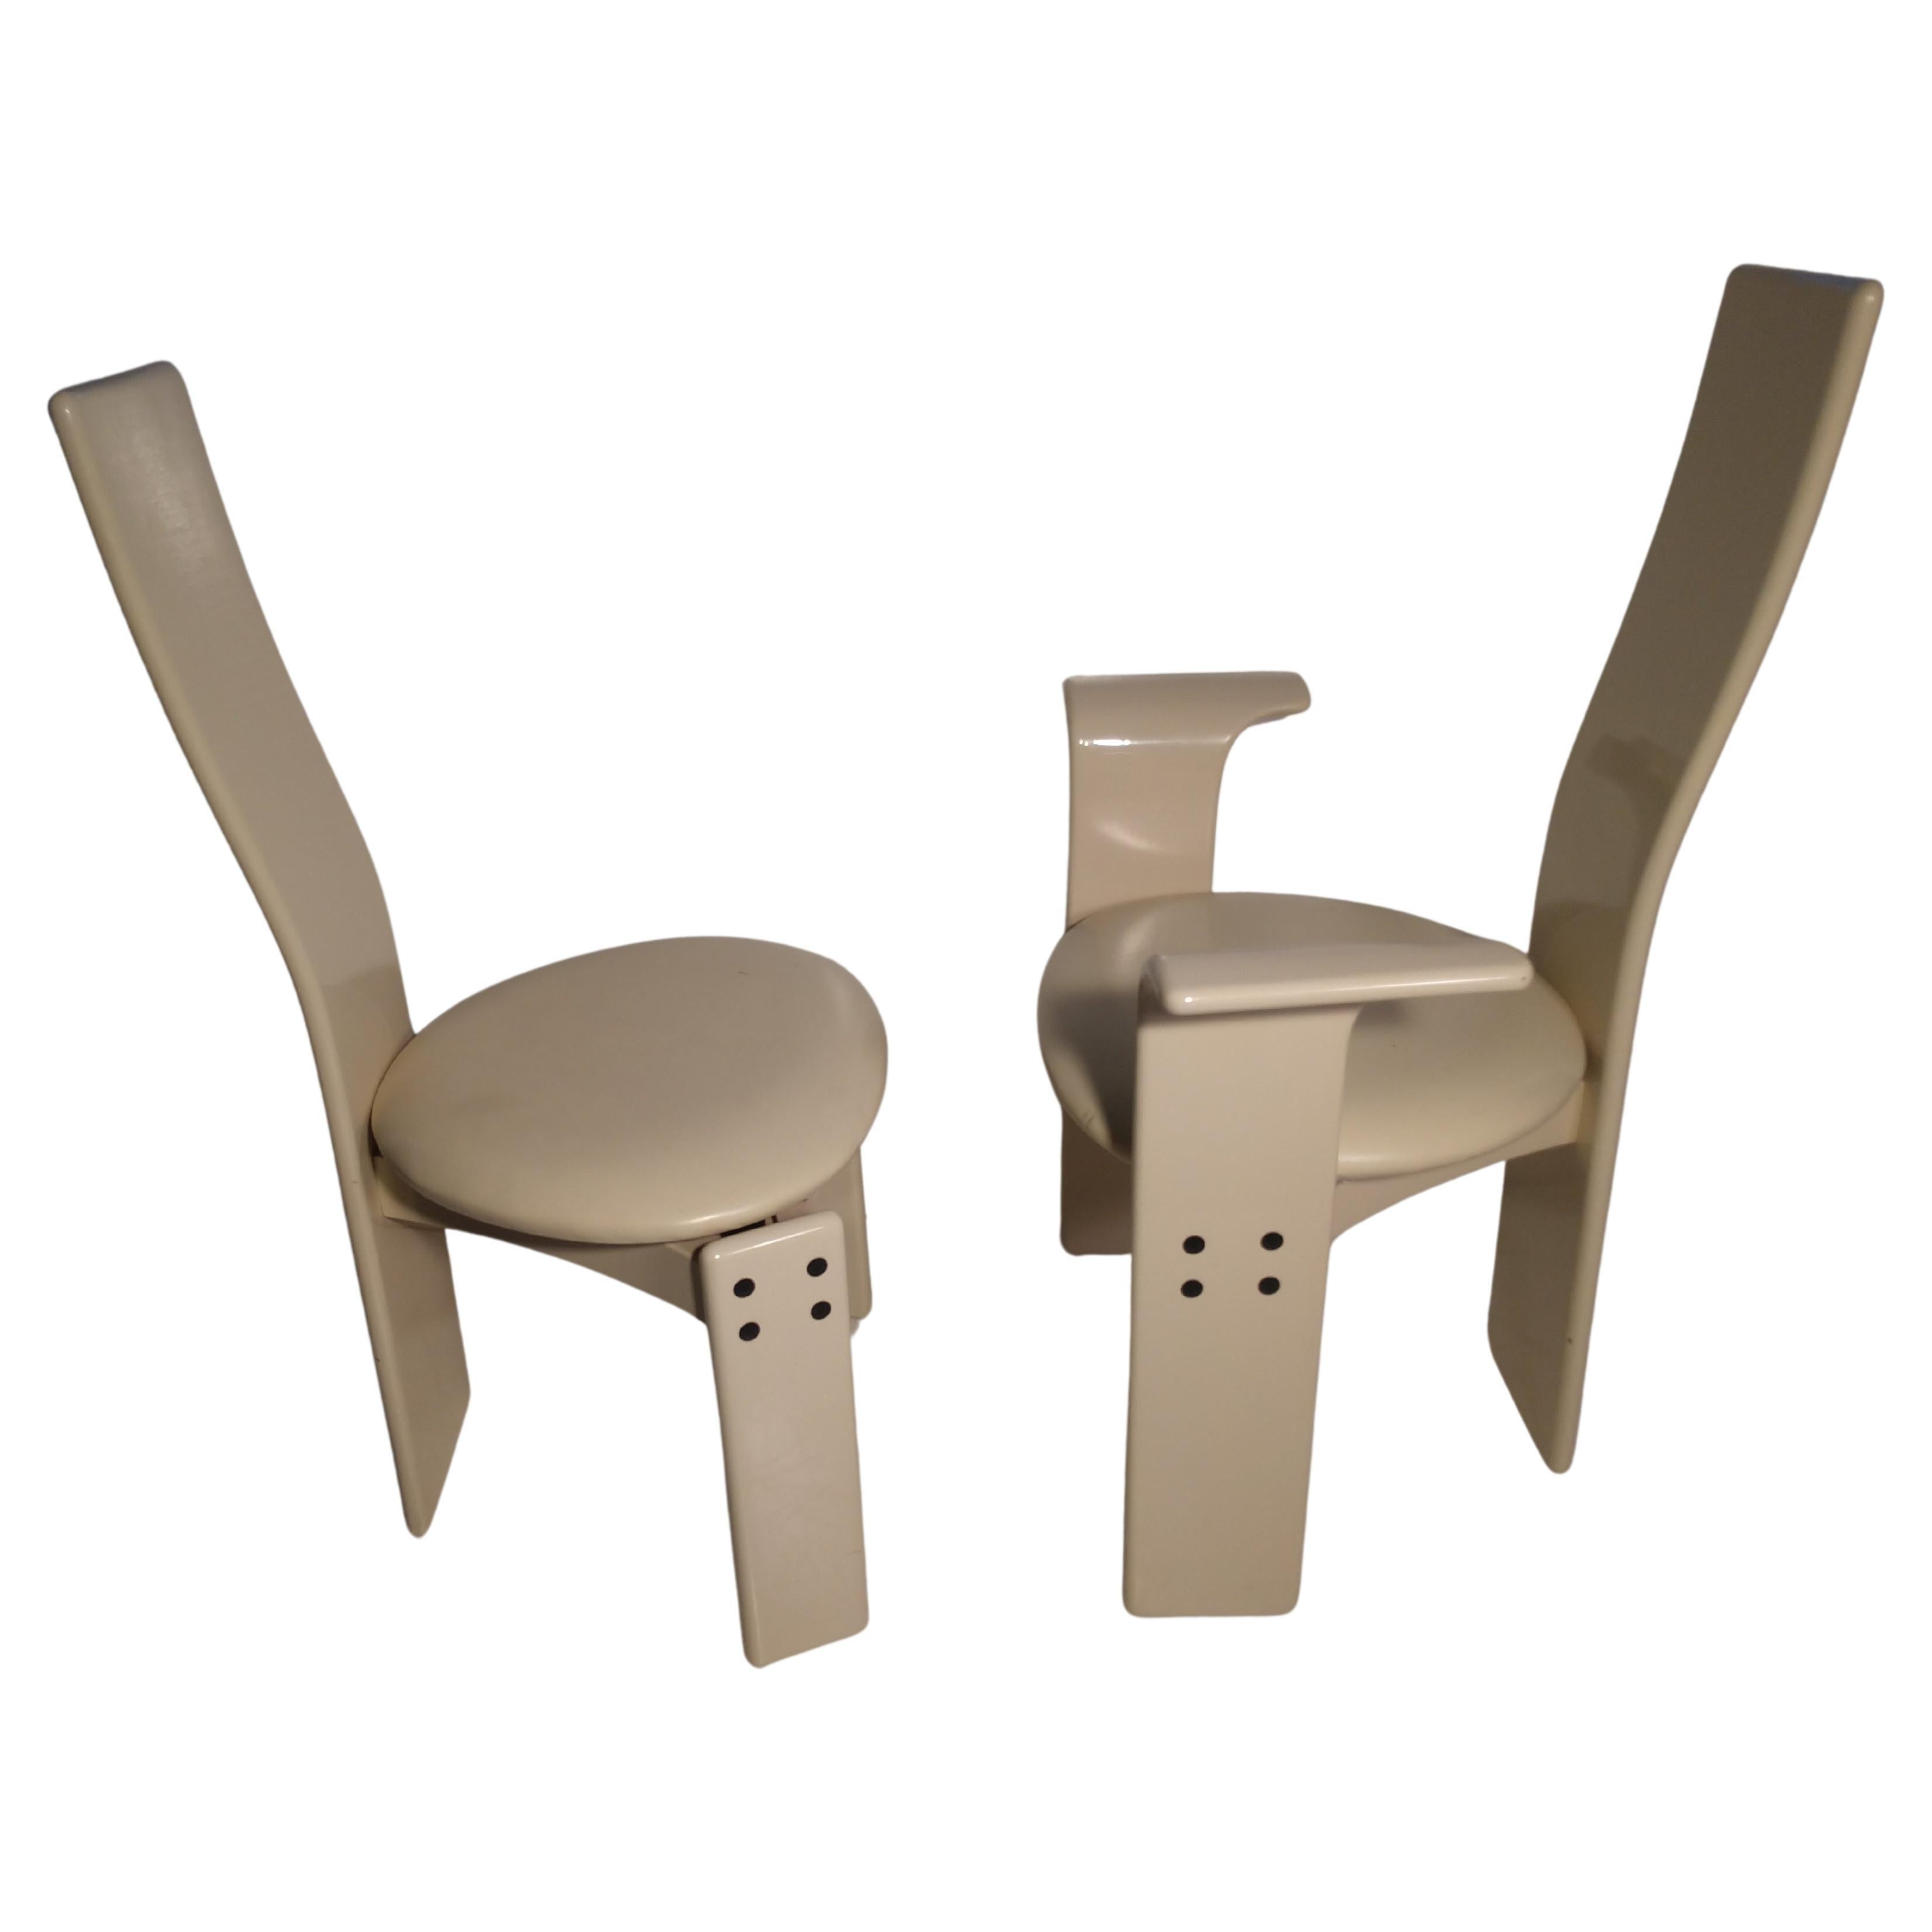 Ensemble de 4 chaises de salle à manger postmodernes laquées en blanc. Marqué fabriqué en Italie, dans le style de Saporiti. Les petites imperfections de la laque sont minimes.
En photo. Taille : La hauteur du siège est de 18.